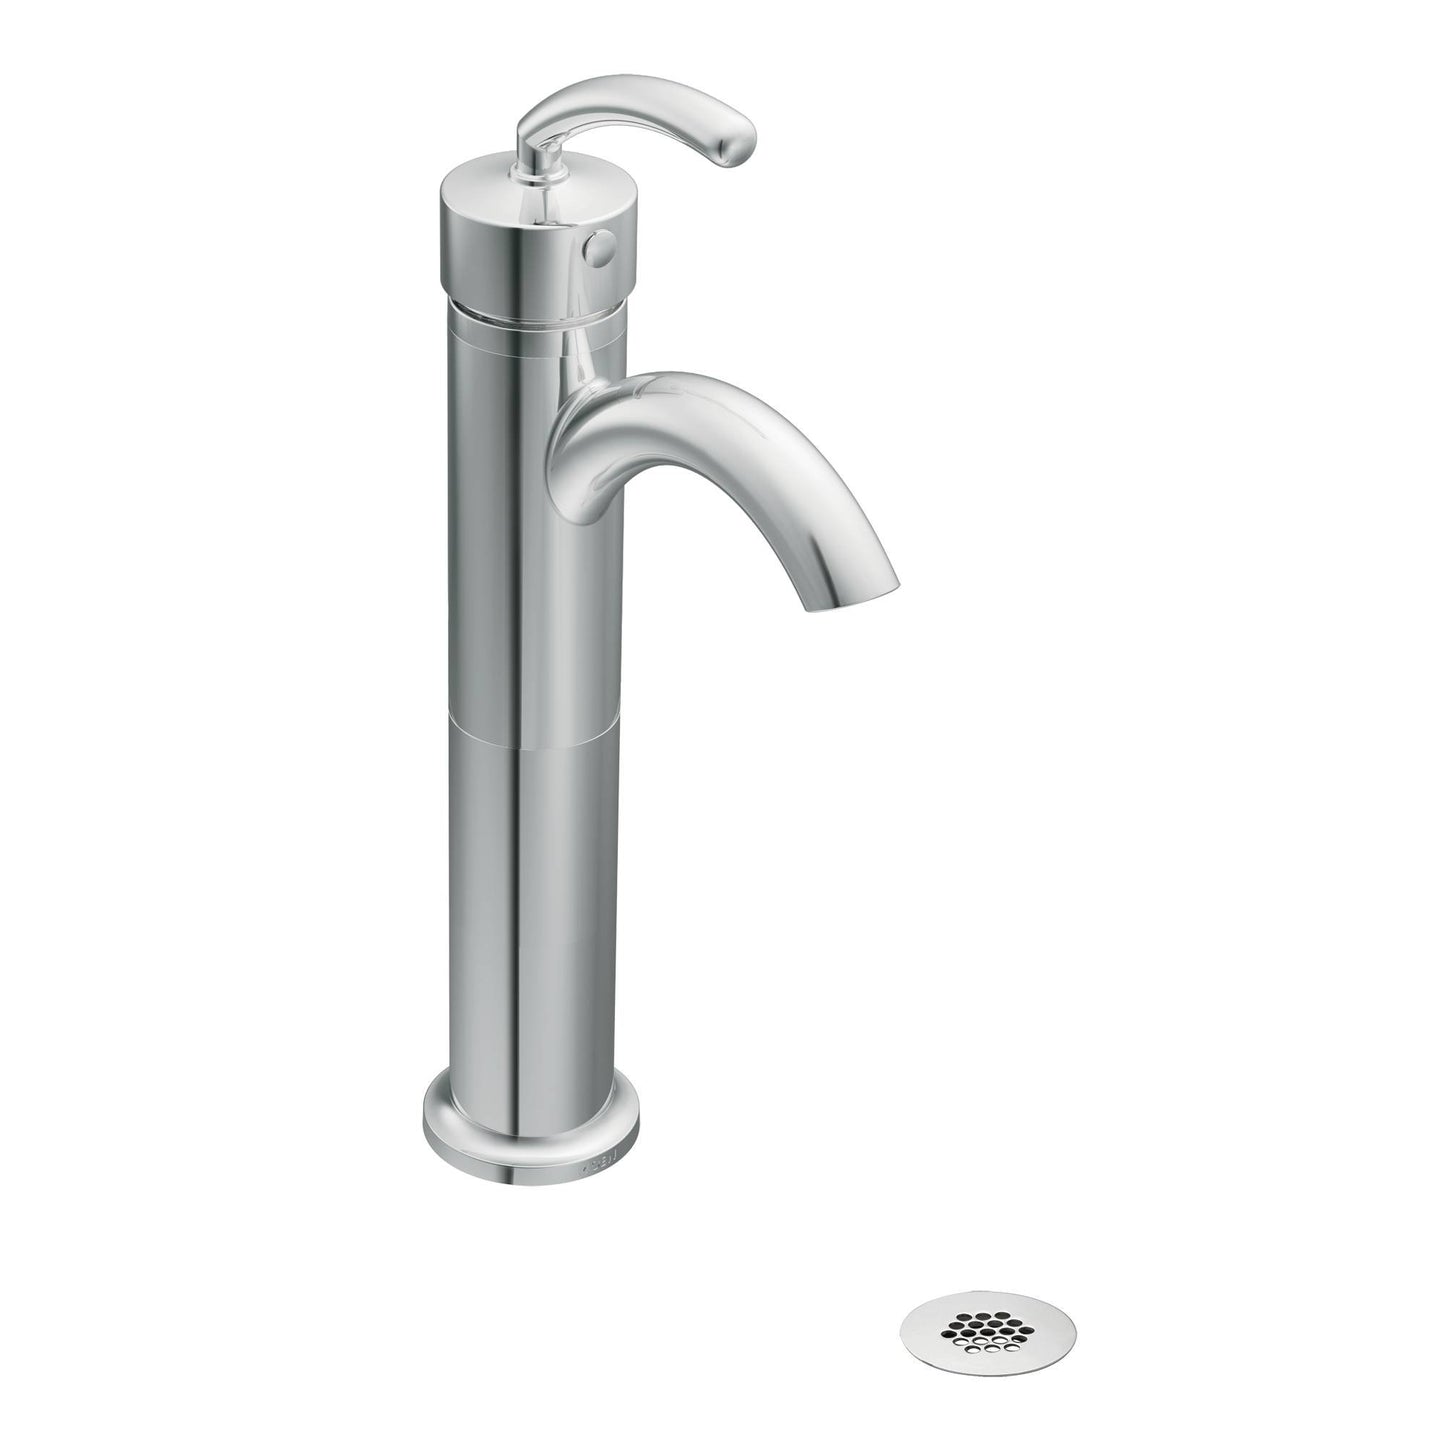 MOEN A1717 Collection Vessel Faucet Extension Kit, Chrome